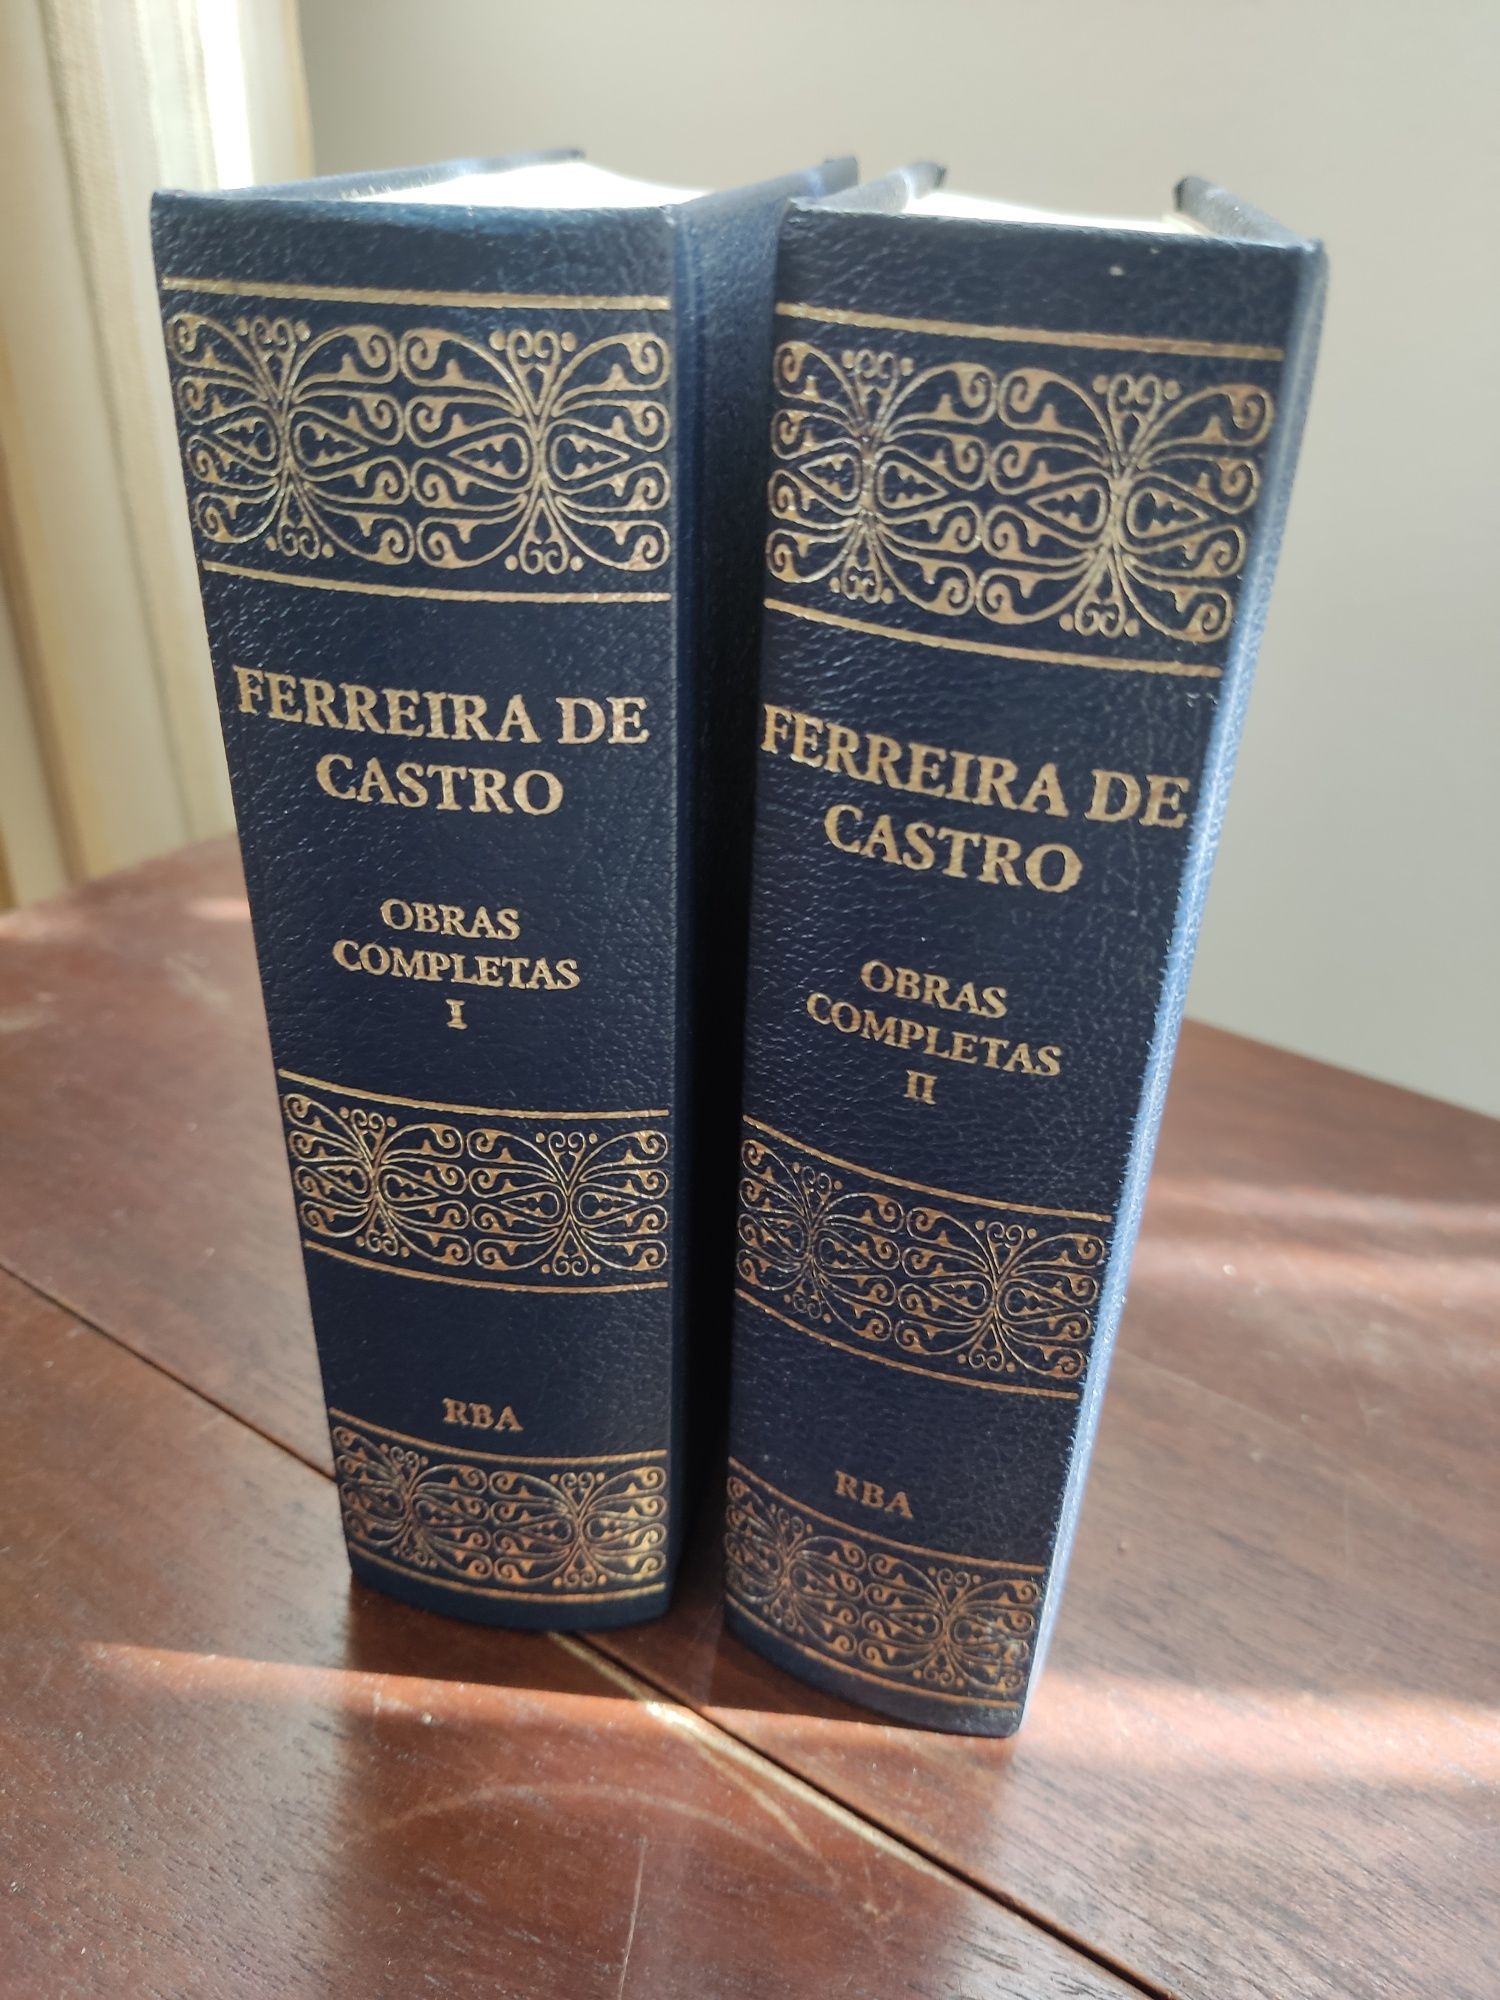 Obras completas de Ferreira de Castro - I e II